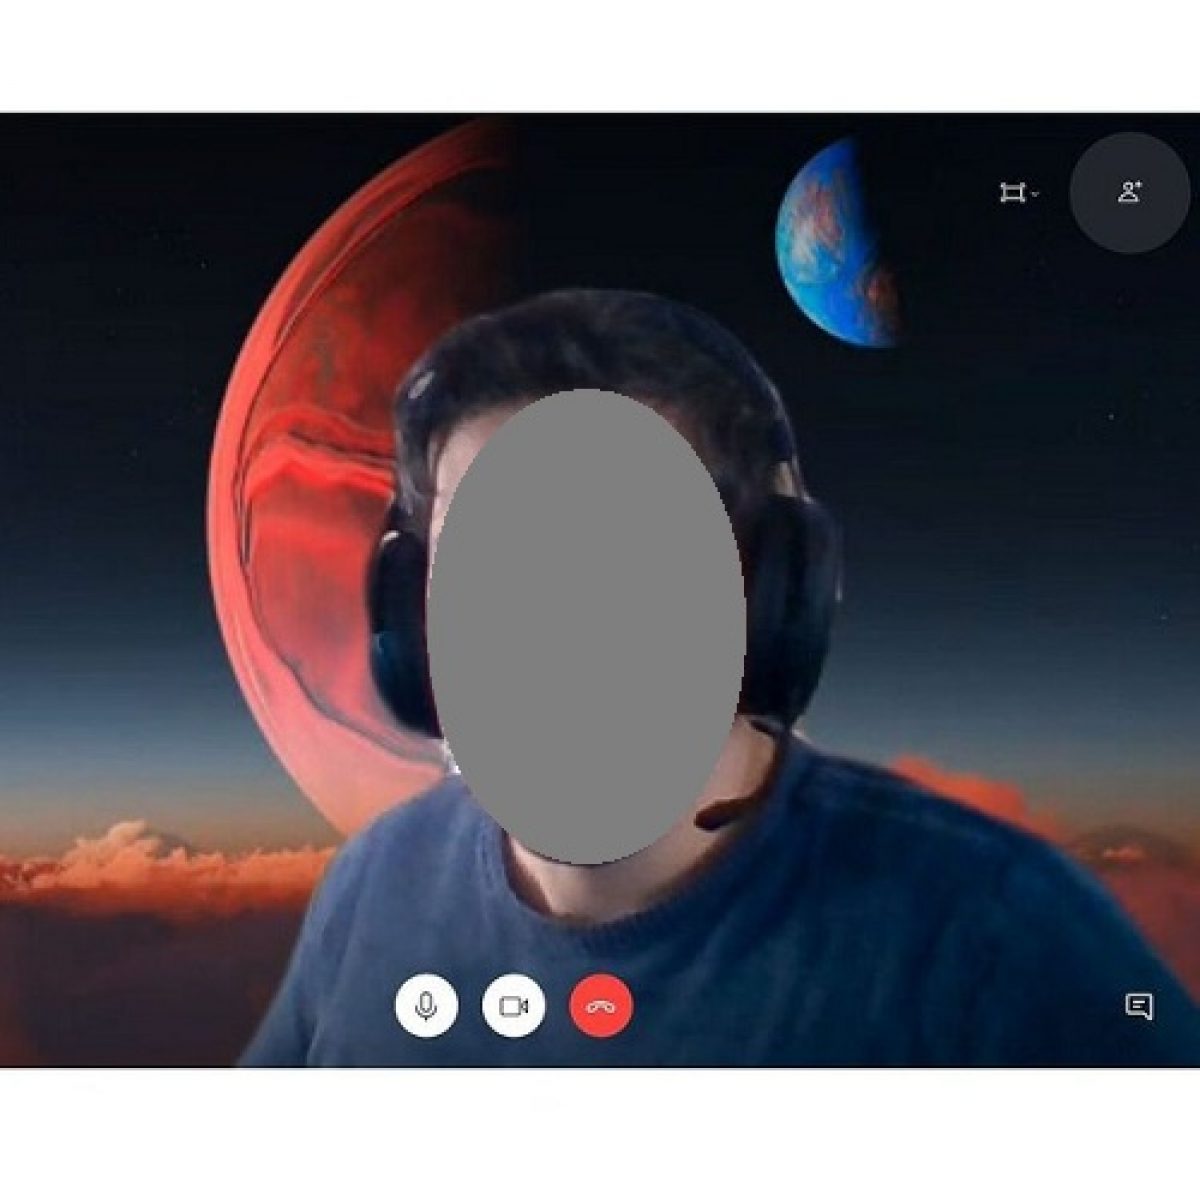 Bạn muốn có một cuộc gọi video trực tuyến như thể mình đang đứng đối diện nhau? Skype video calls sẽ giúp bạn làm được điều đó. Hãy trải nghiệm tầm quan trọng của gọi video tuyệt vời của Skype và cảm nhận đầy đủ niềm vui của nó.